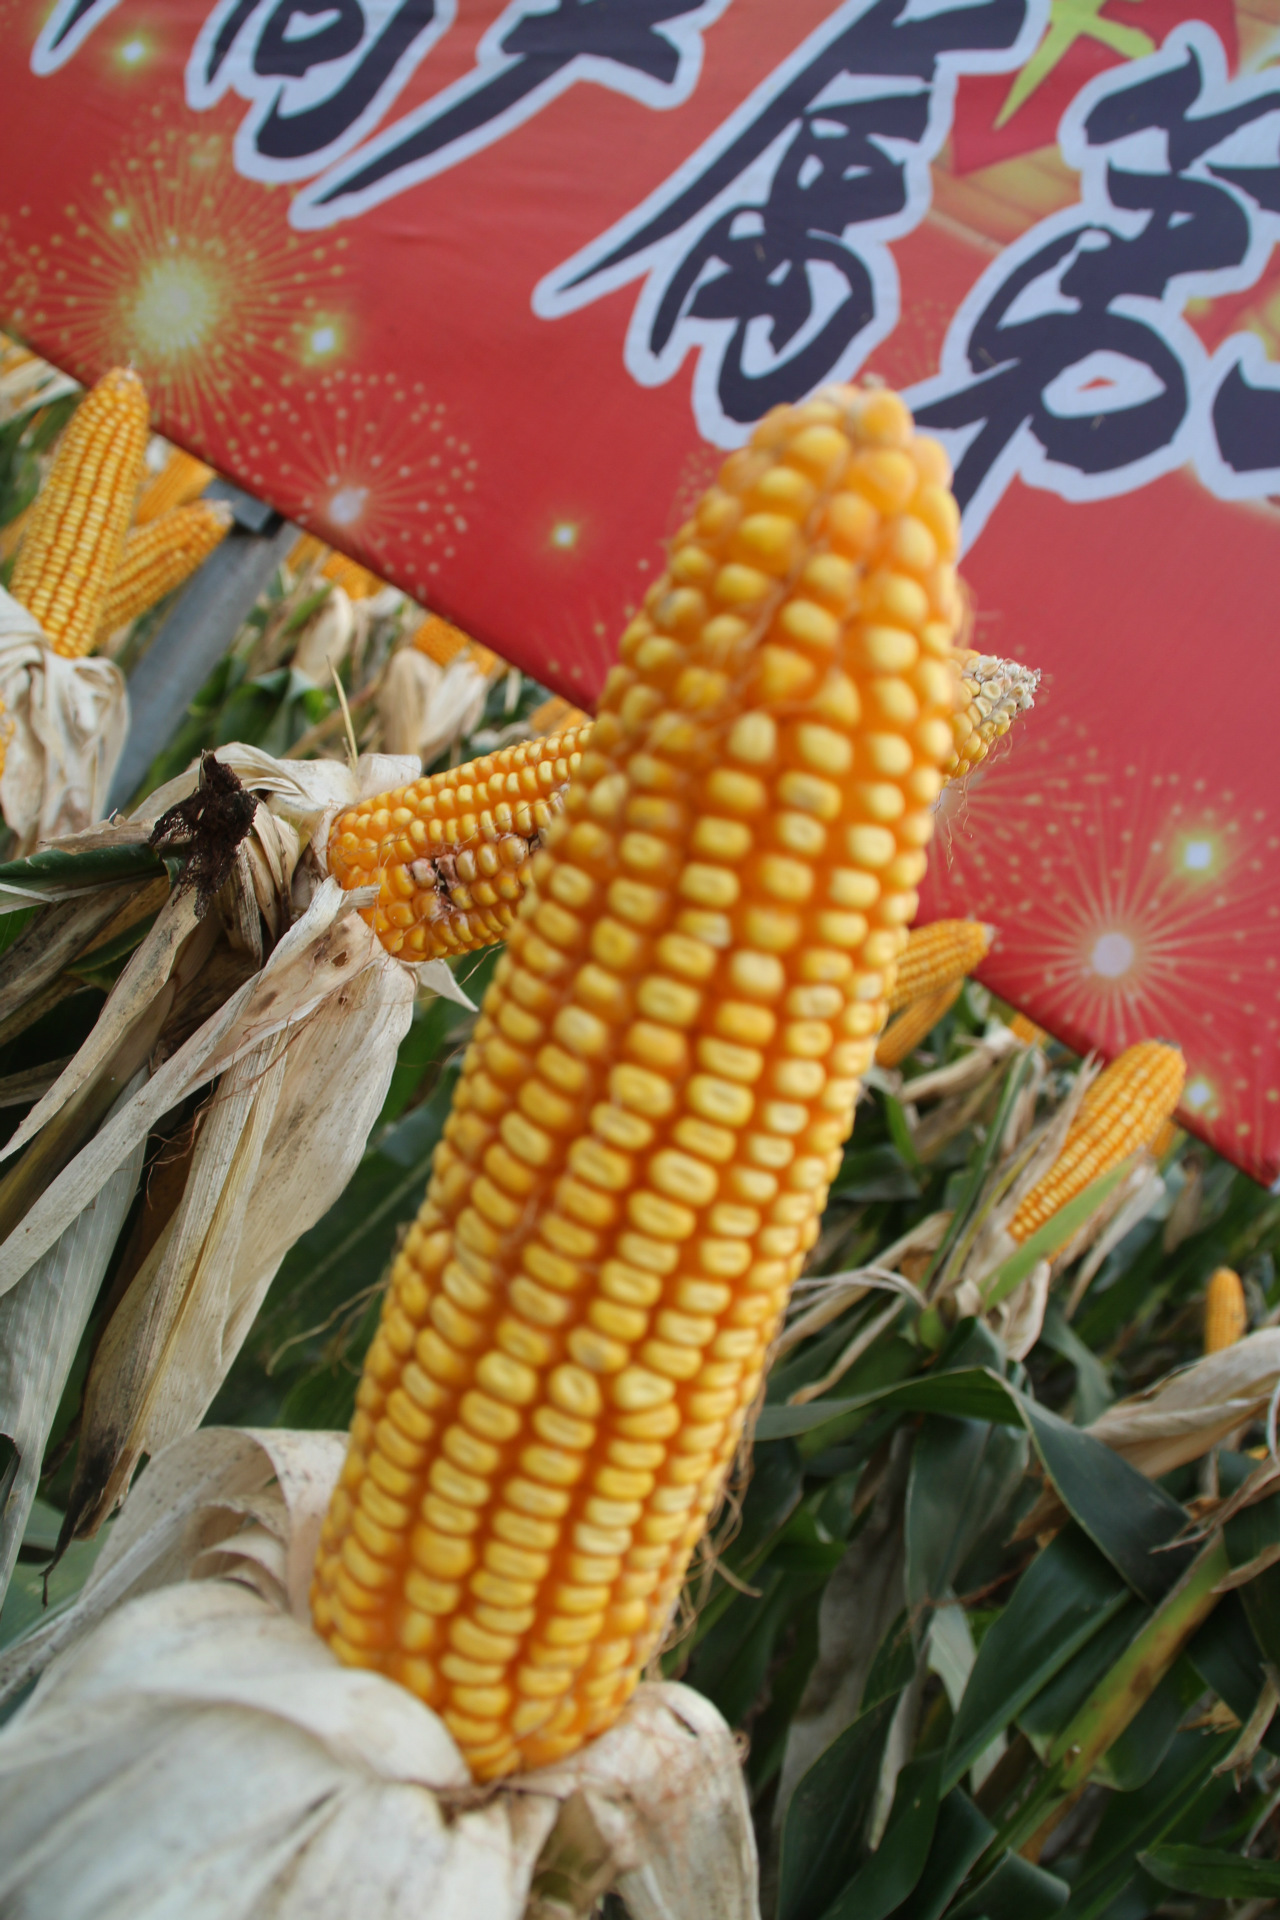 品质优良,容重高达809克,高产稳产,国审德利农988玉米种子